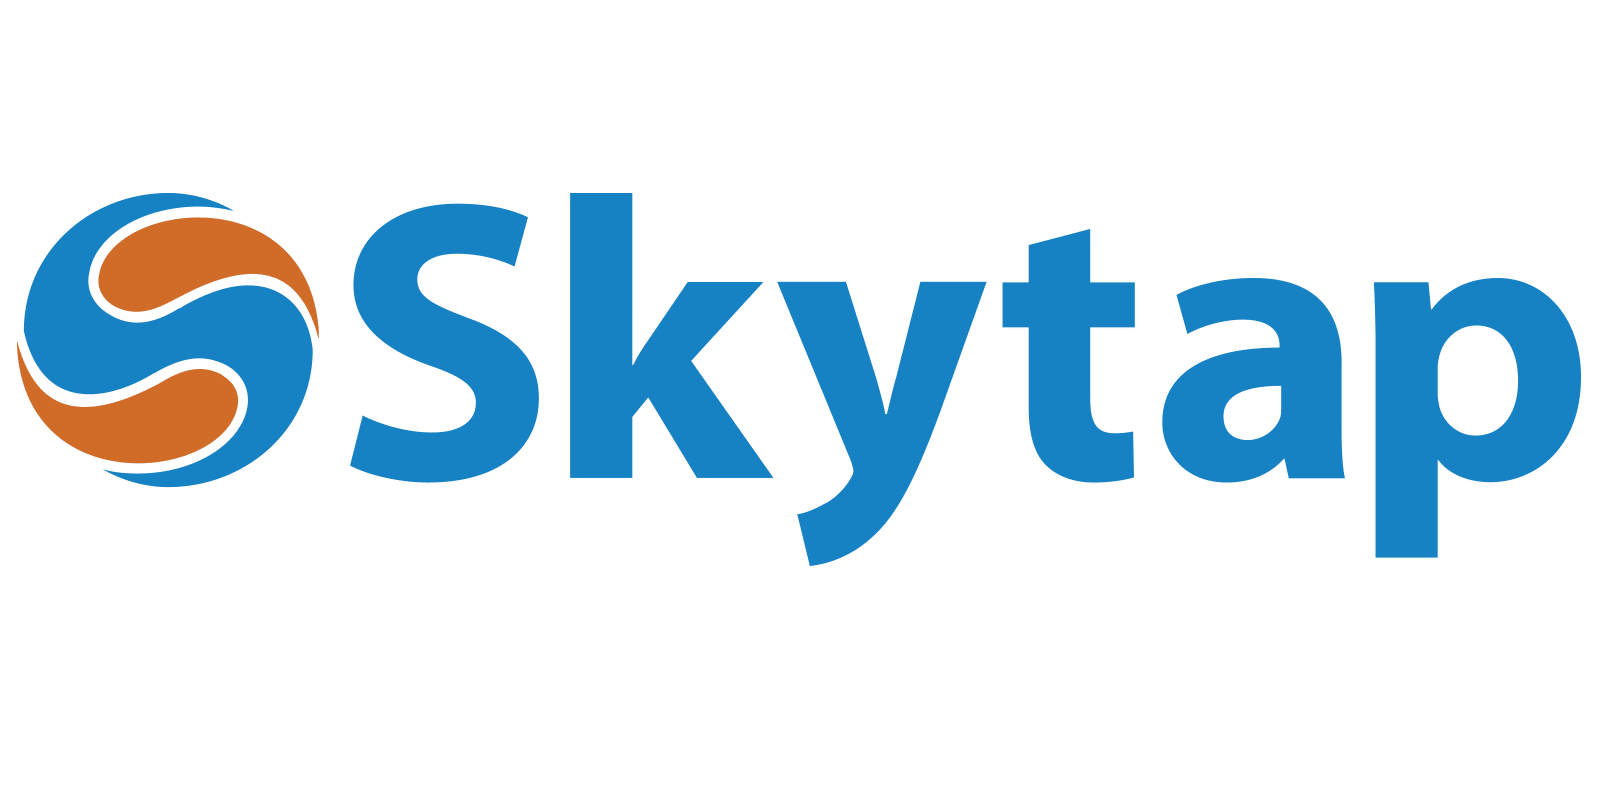 “云服务公司Skytap在新CEO上任后的首次重大变动中解雇了25